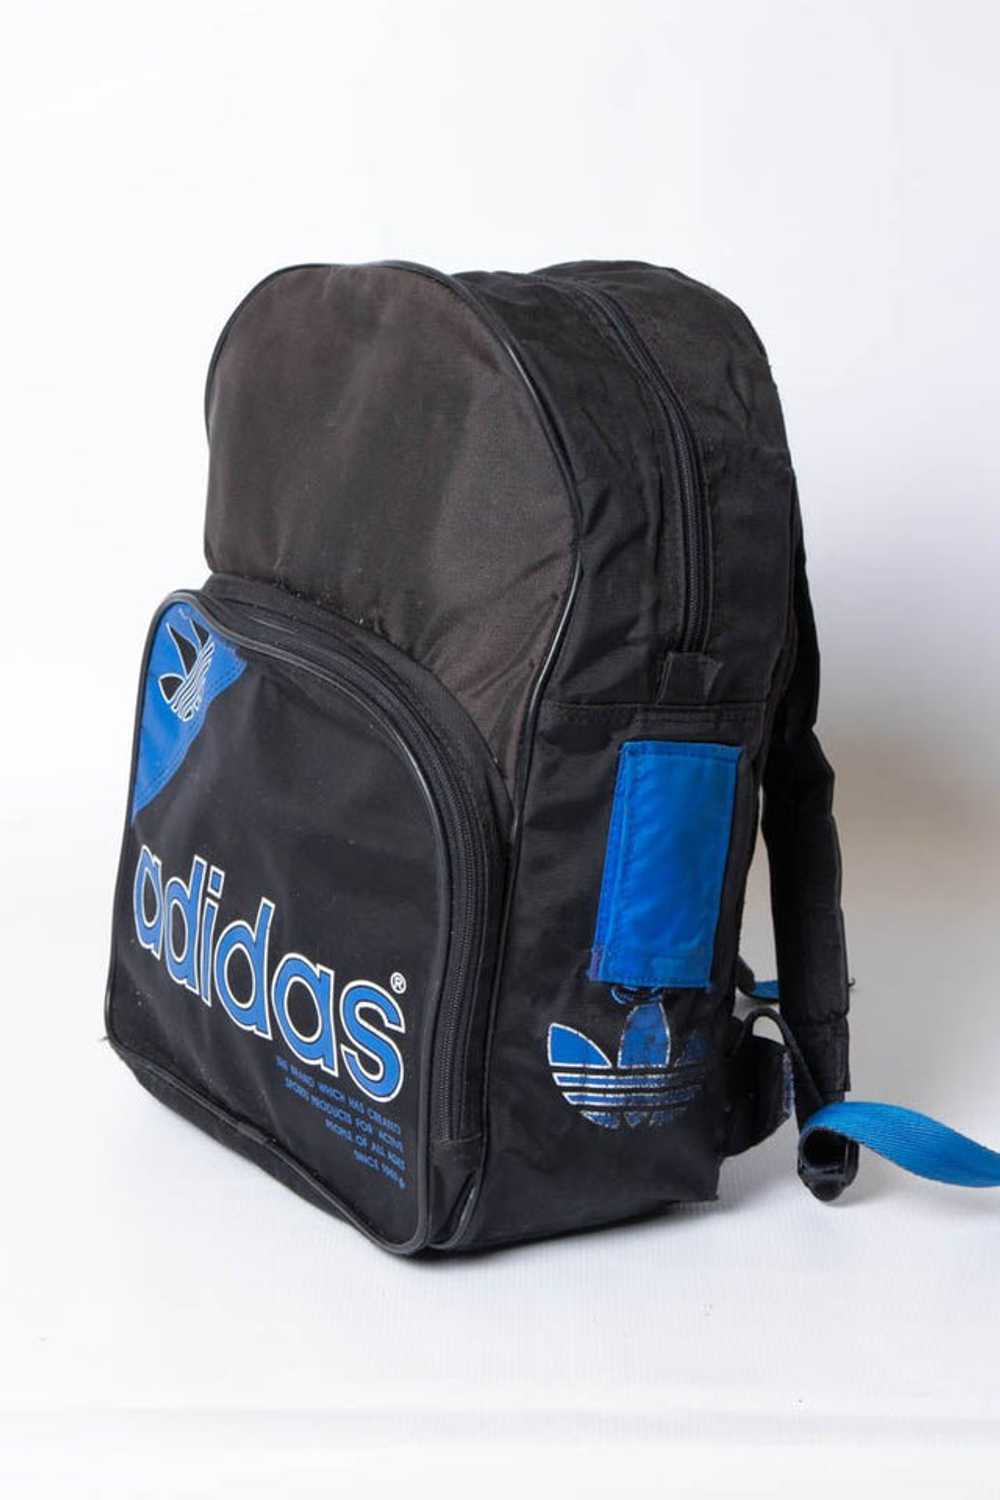 Adidas Backpack - image 4